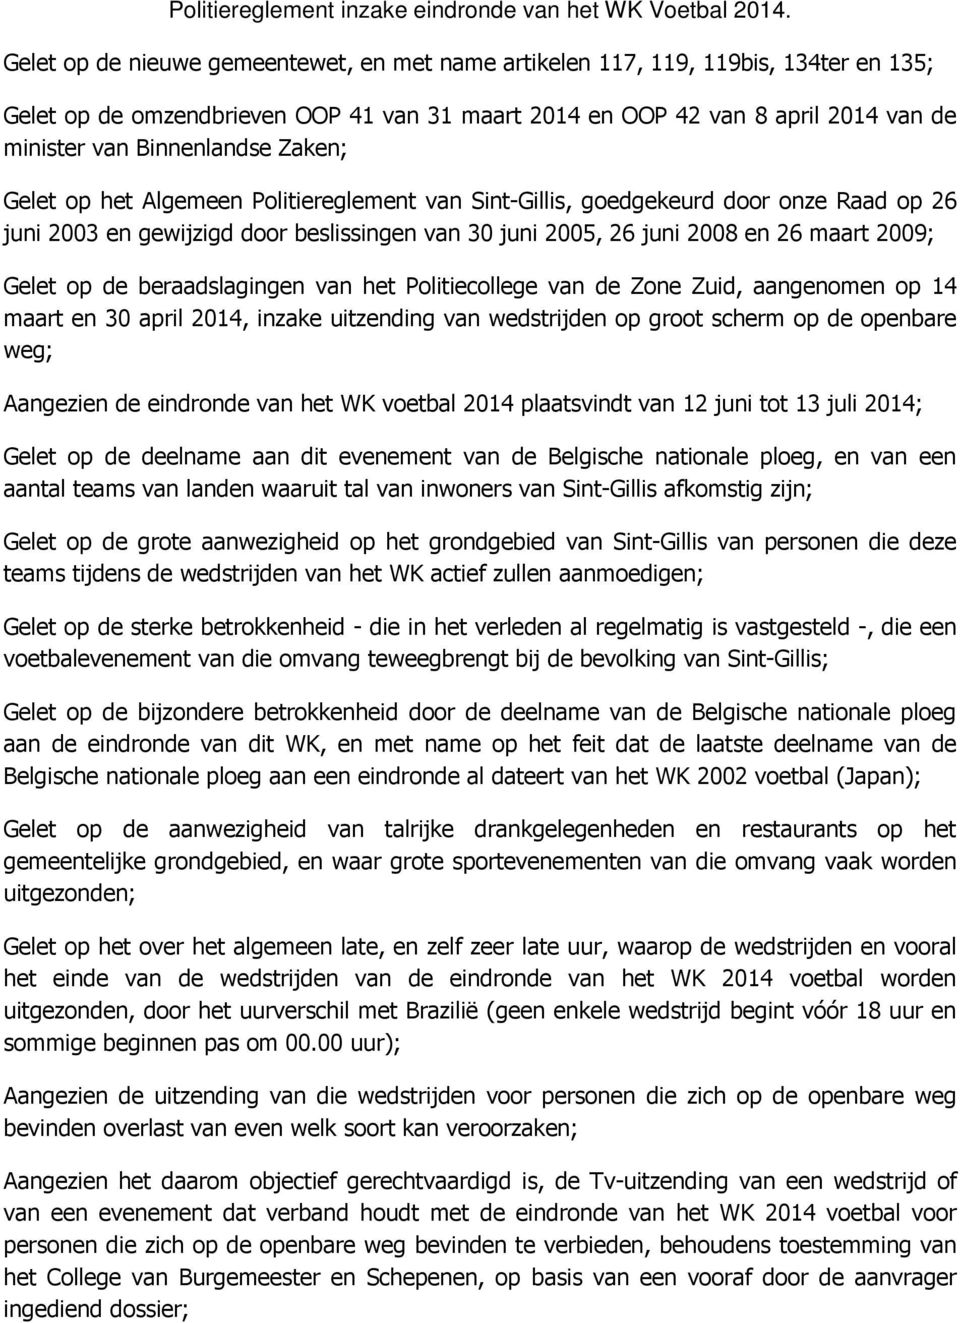 Zaken; Gelet op het Algemeen Politiereglement van Sint-Gillis, goedgekeurd door onze Raad op 26 juni 2003 en gewijzigd door beslissingen van 30 juni 2005, 26 juni 2008 en 26 maart 2009; Gelet op de